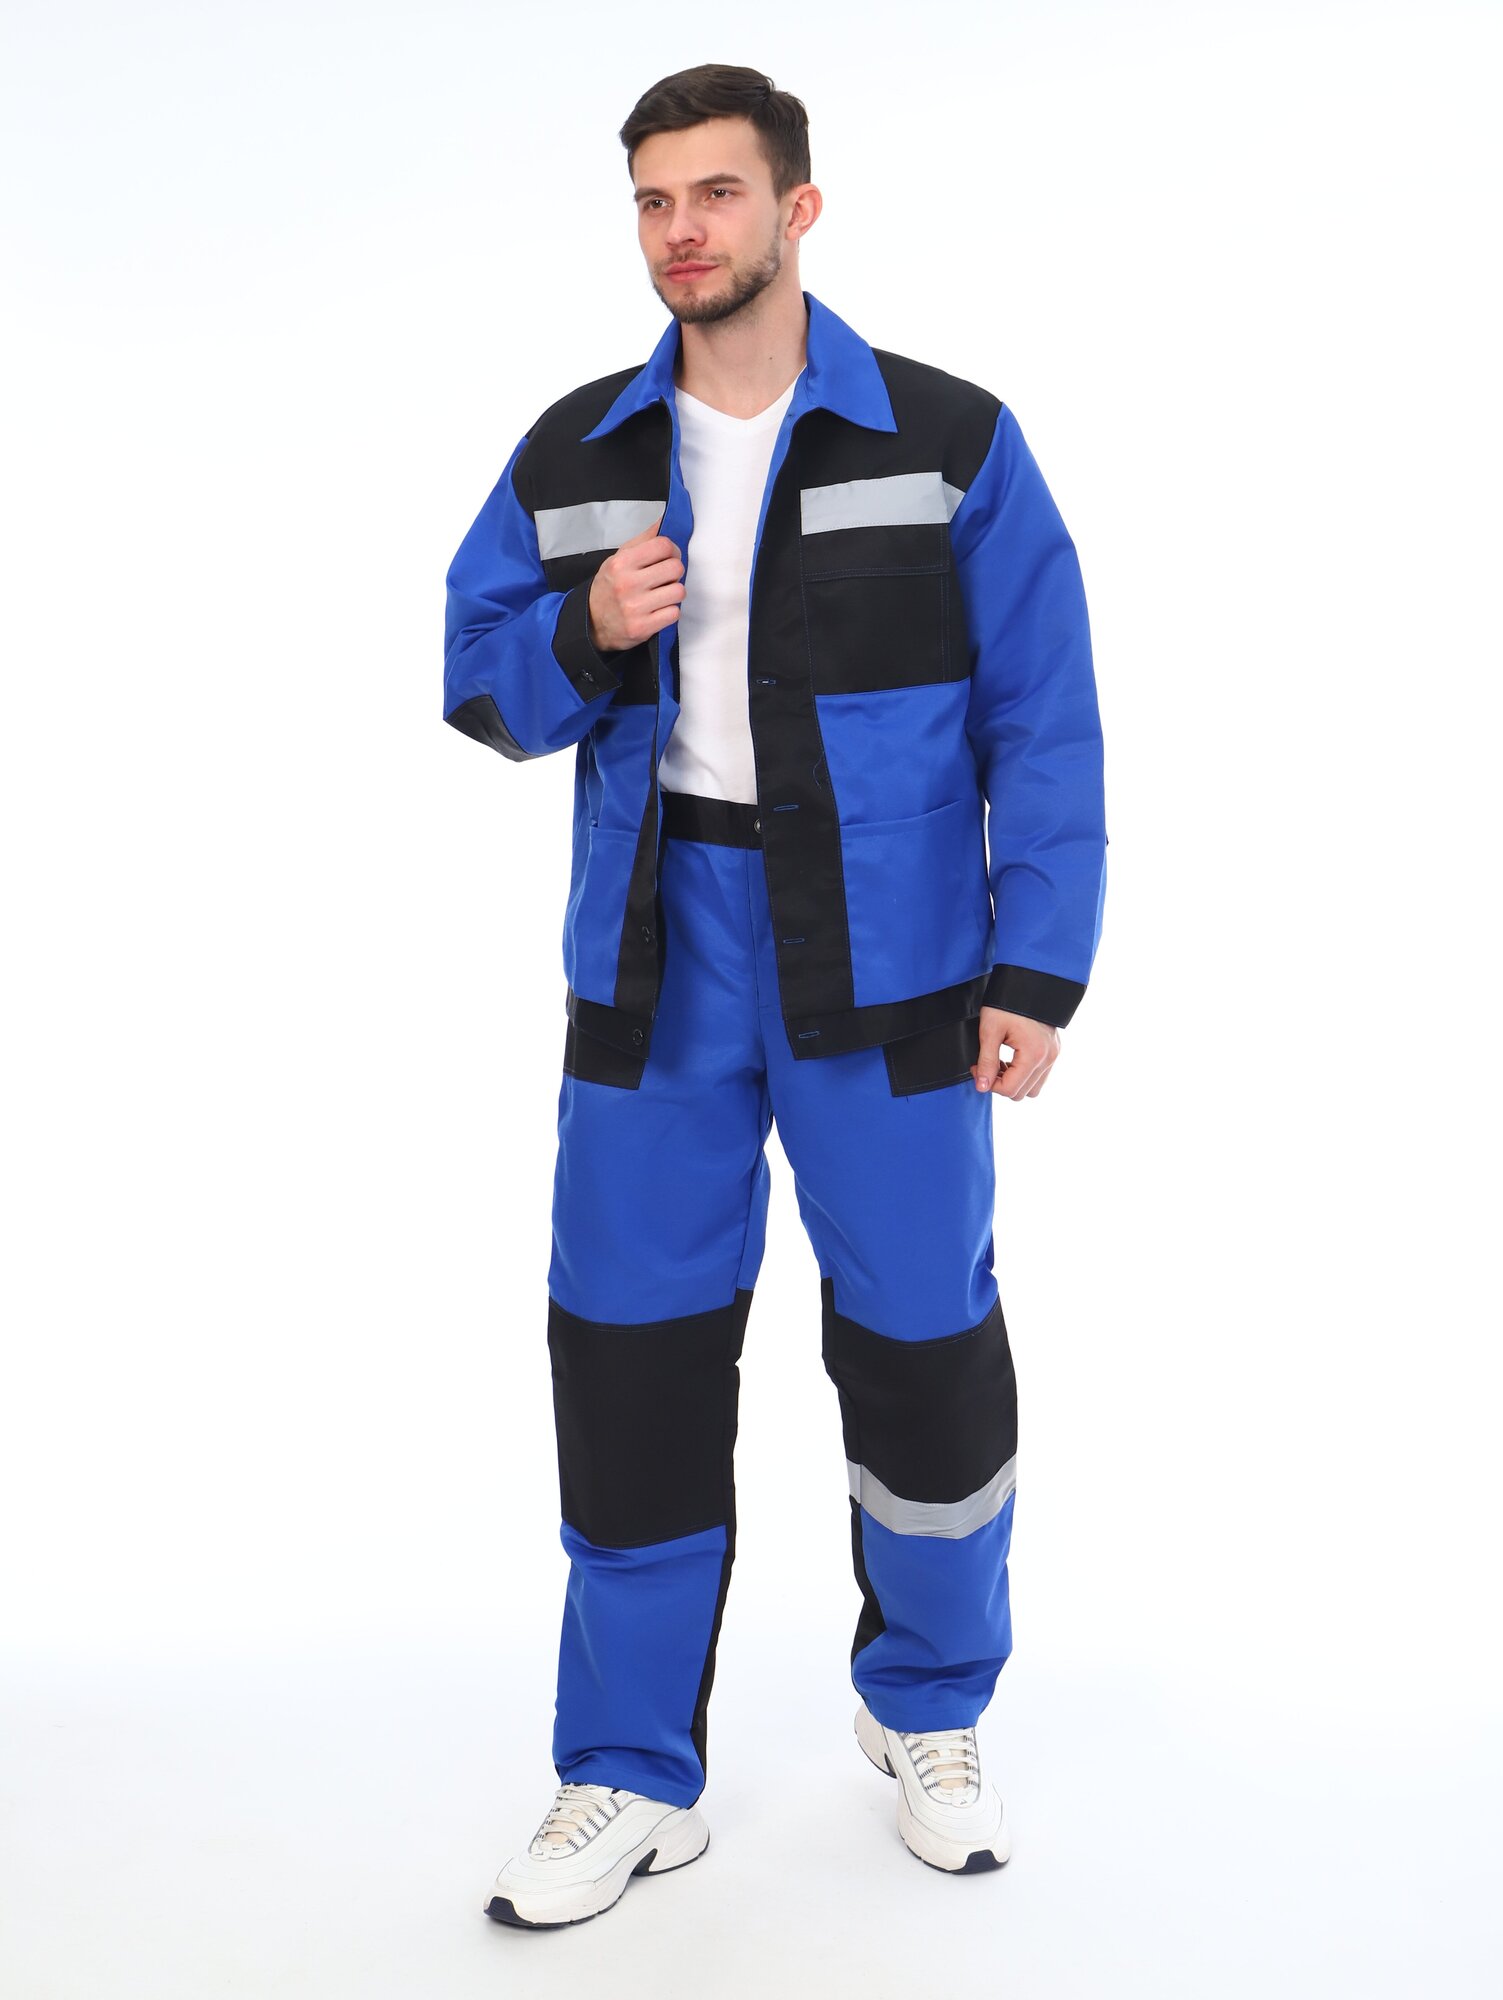 Костюм мужской рабочий (куртка + брюки), спецовка для ремонта, строительства, дачи, цвет синий/черный, размер 48-50 (170-176)